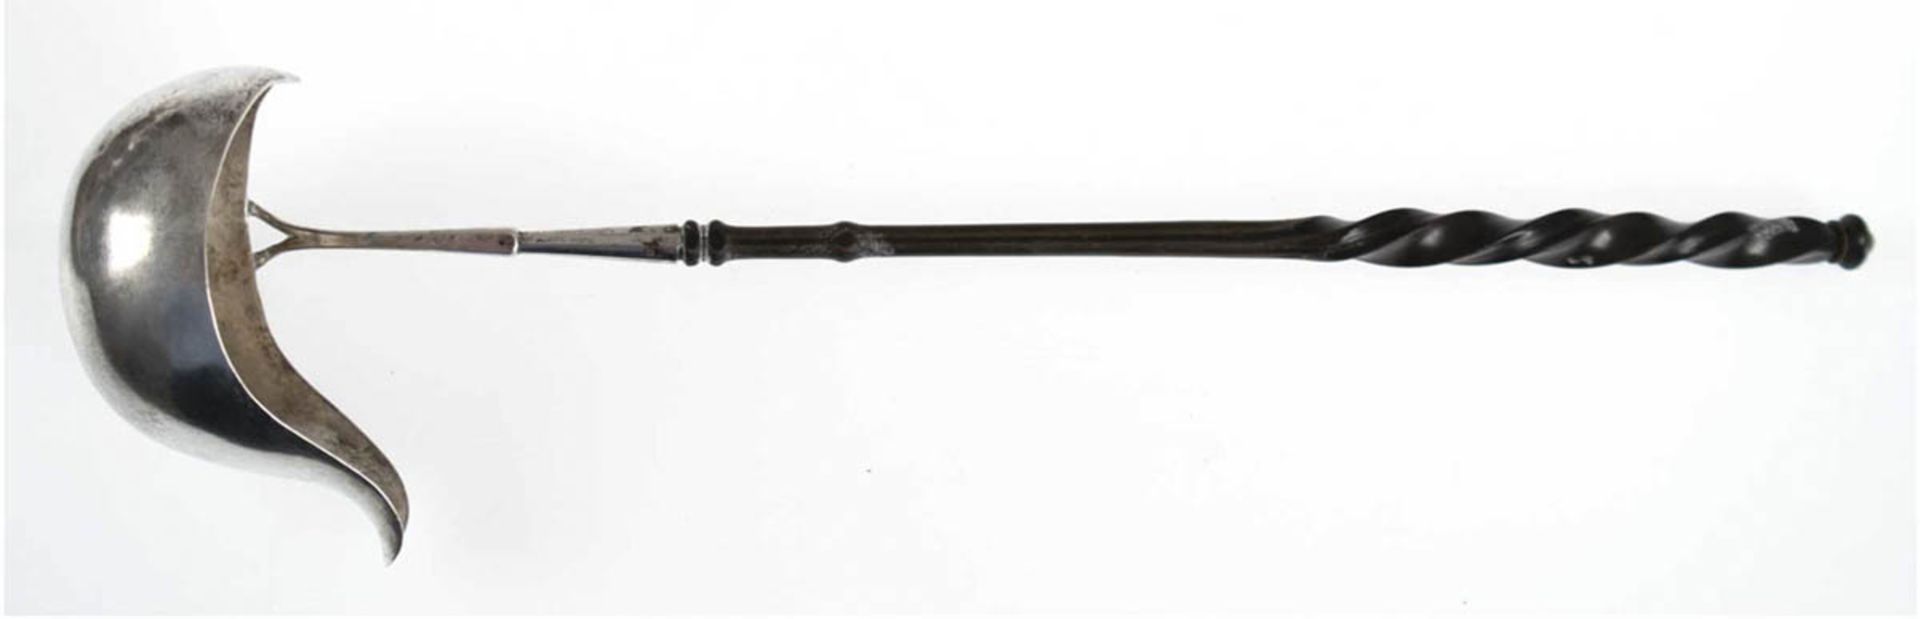 Bowlekelle, Hamburg 19. Jh., Silber, punziert, ca. 78 g, gedrechselter ebonisierter Griff,L. 38 cm